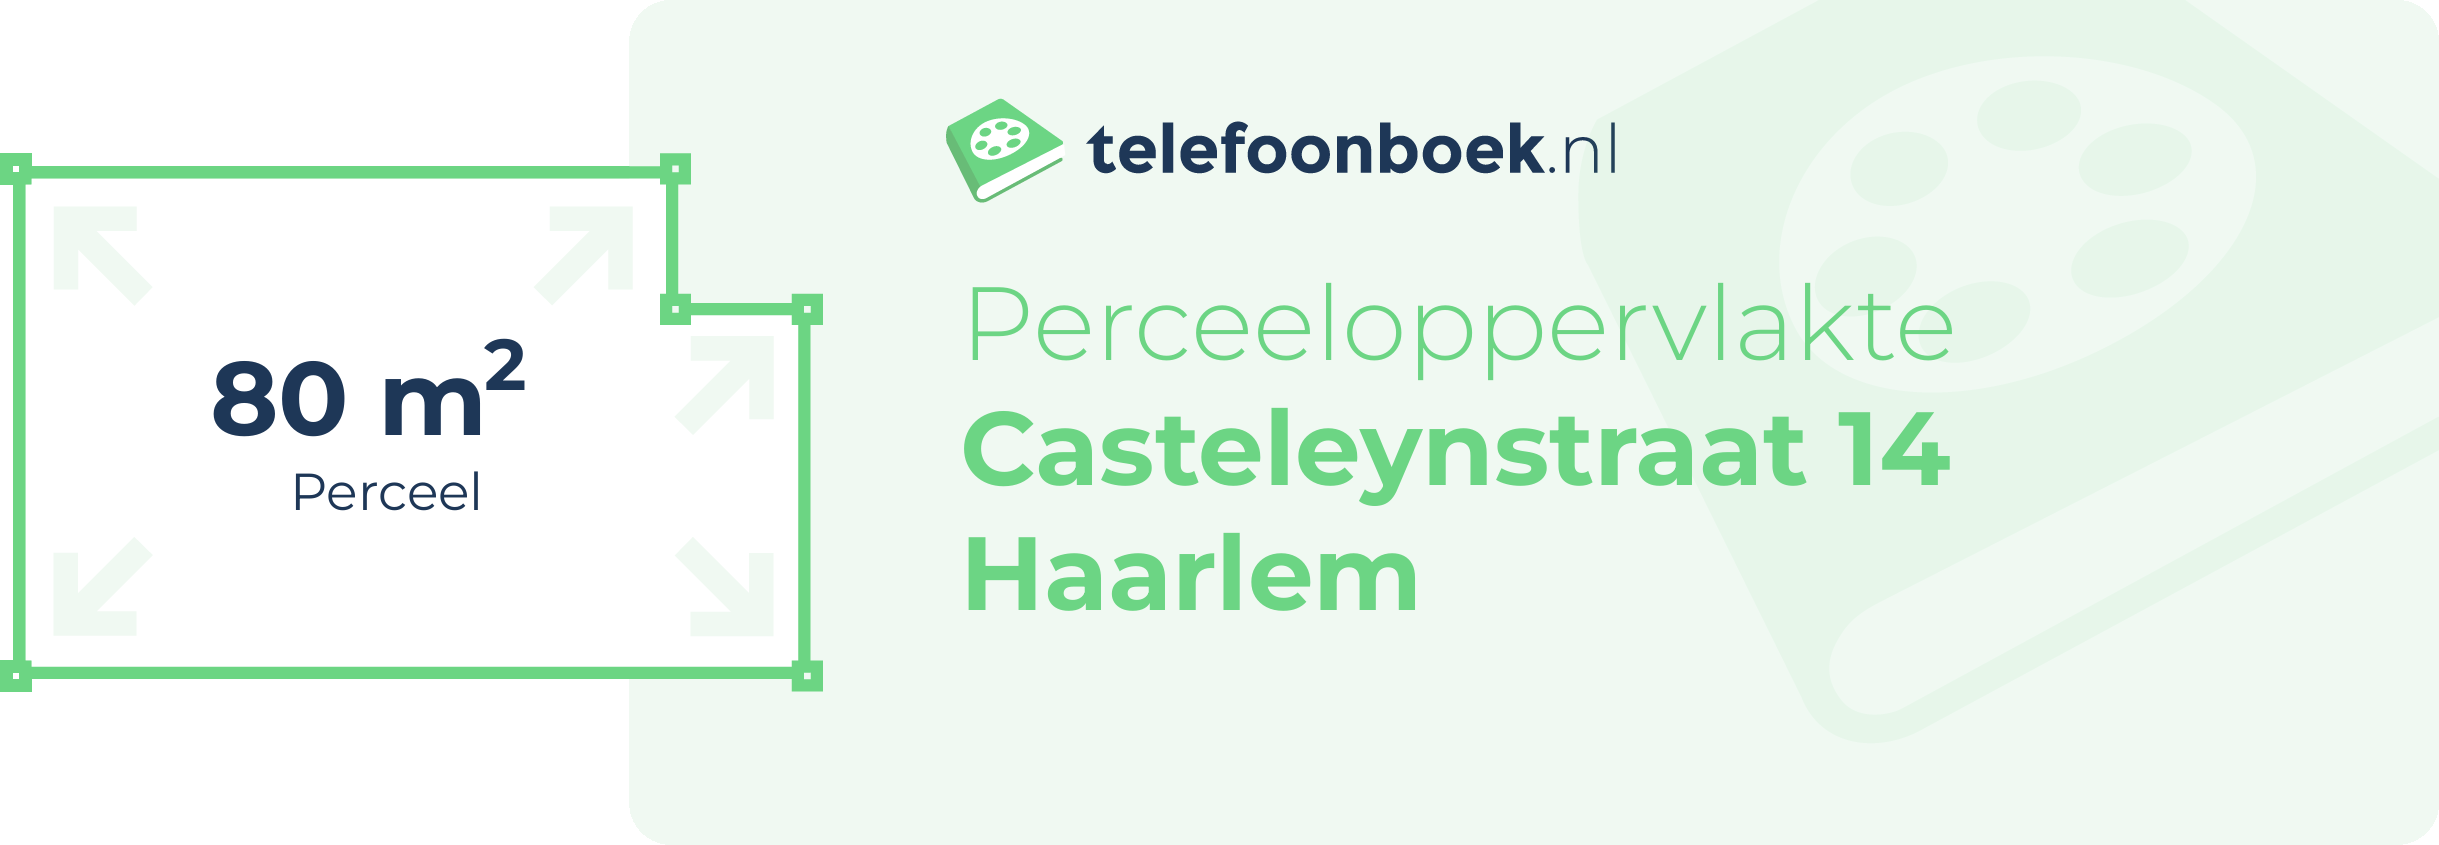 Perceeloppervlakte Casteleynstraat 14 Haarlem